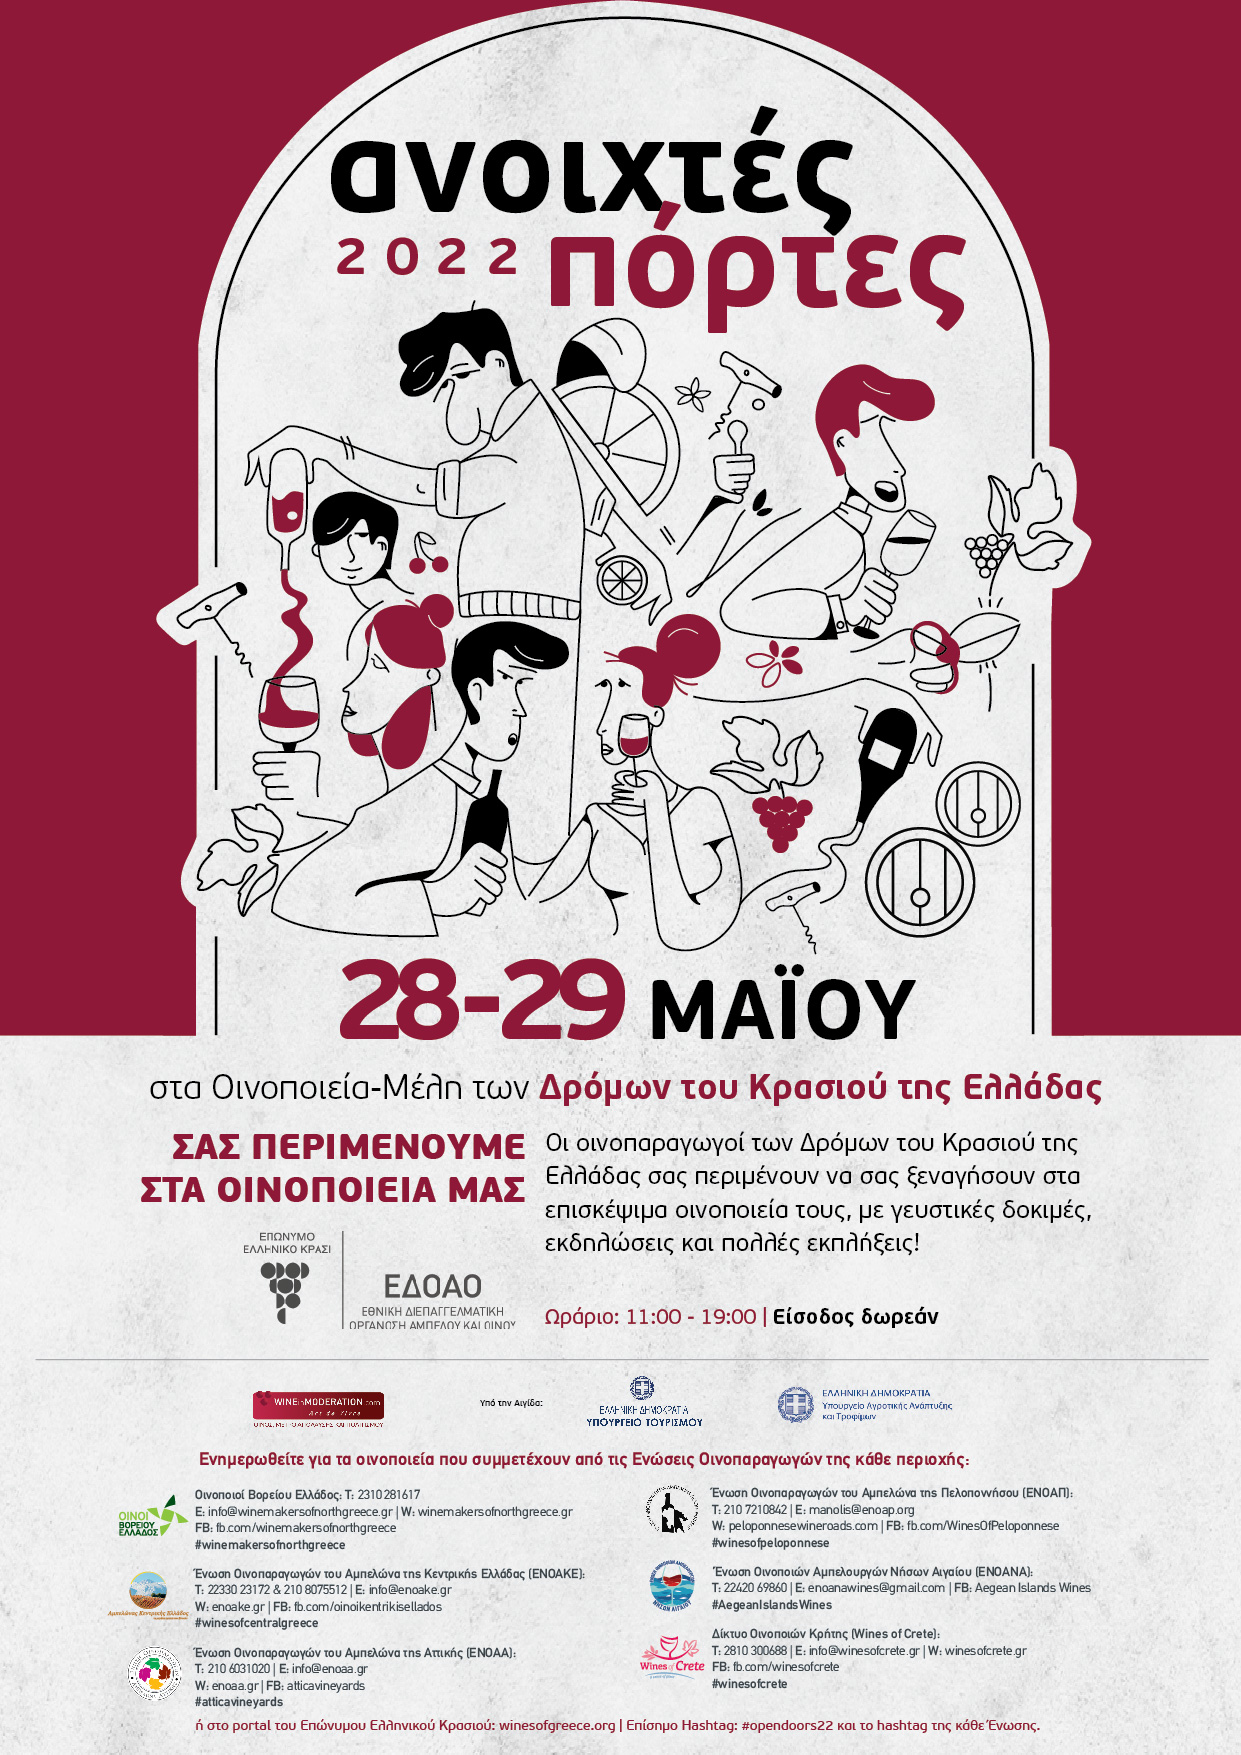 «Ανοιχτές Πόρτες» στα οινοποιεία της Ελλάδας! Σάββατο 28 Μαΐου και Κυριακή 29 Μαΐου 2022